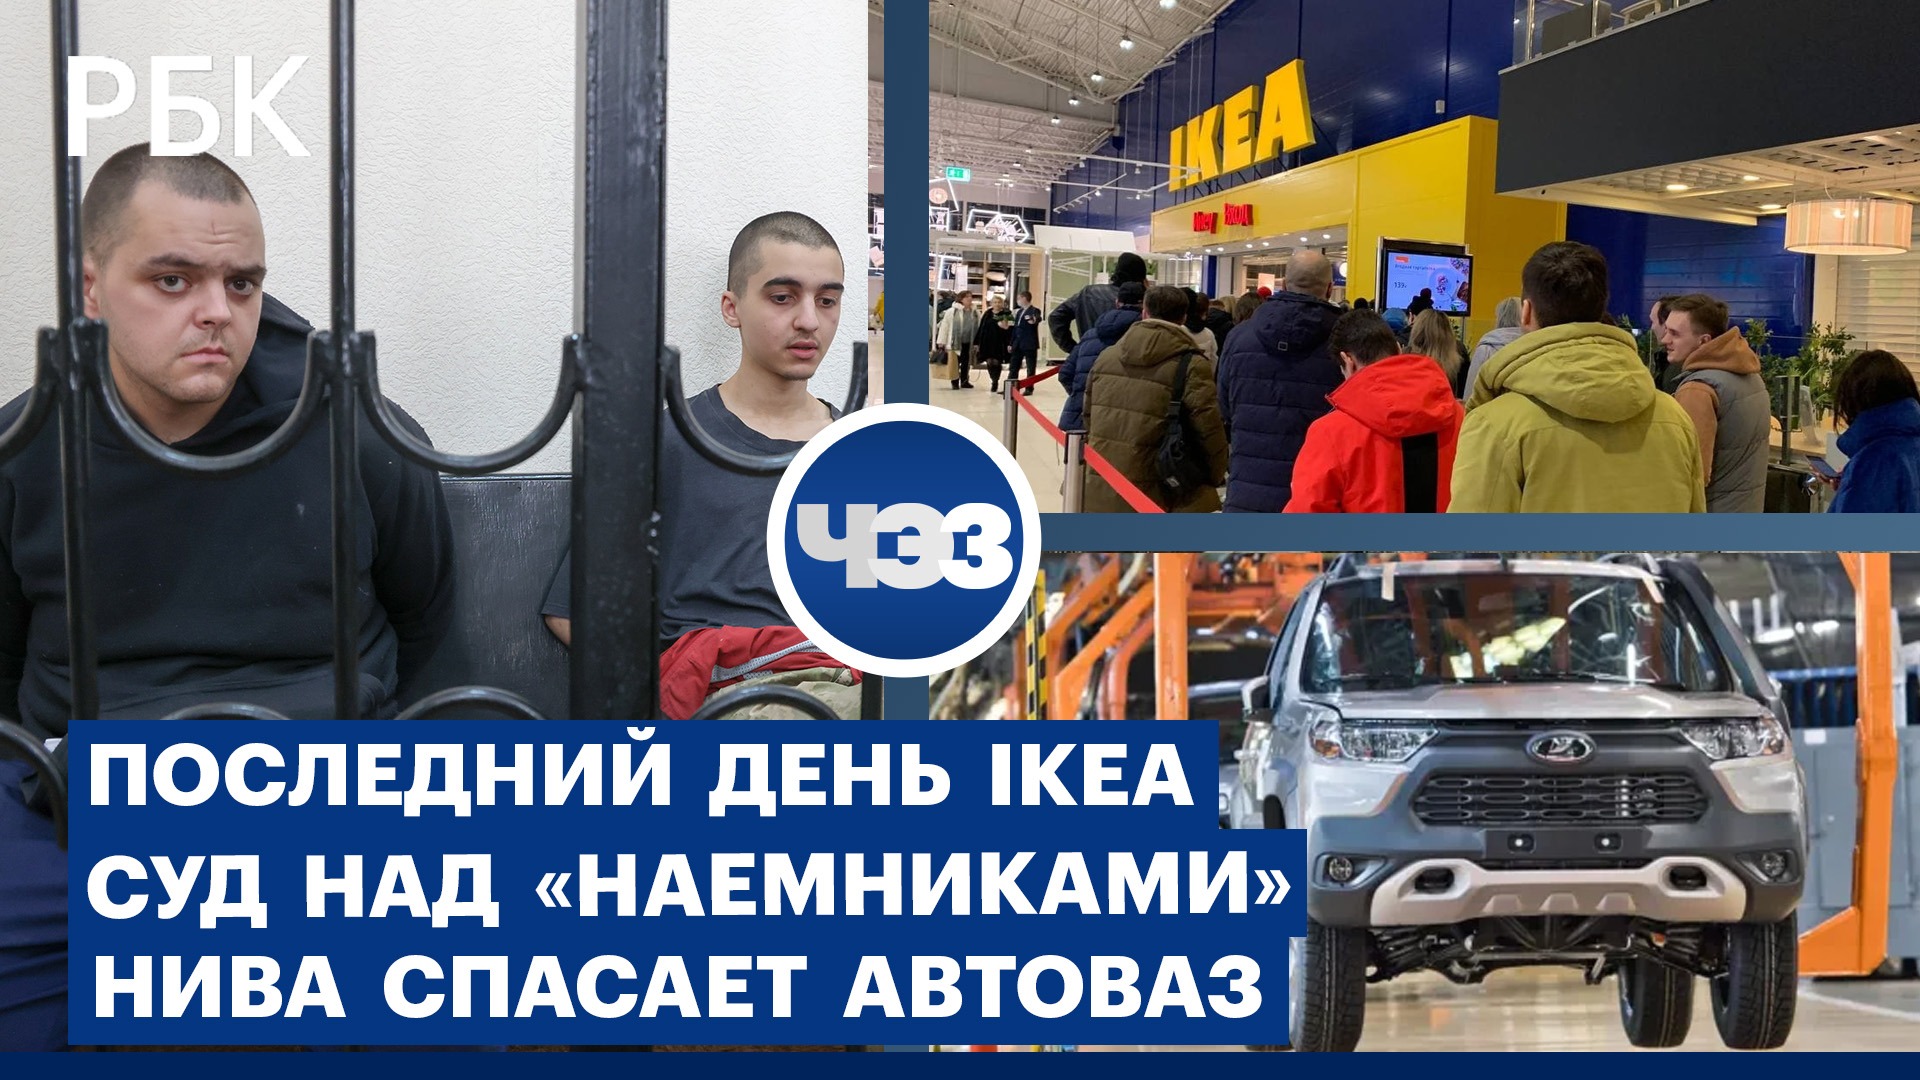 Суд над «наемниками» в ДНР. IKEA завершает финальную распродажу в России. Нива спасает АвтоВАЗ